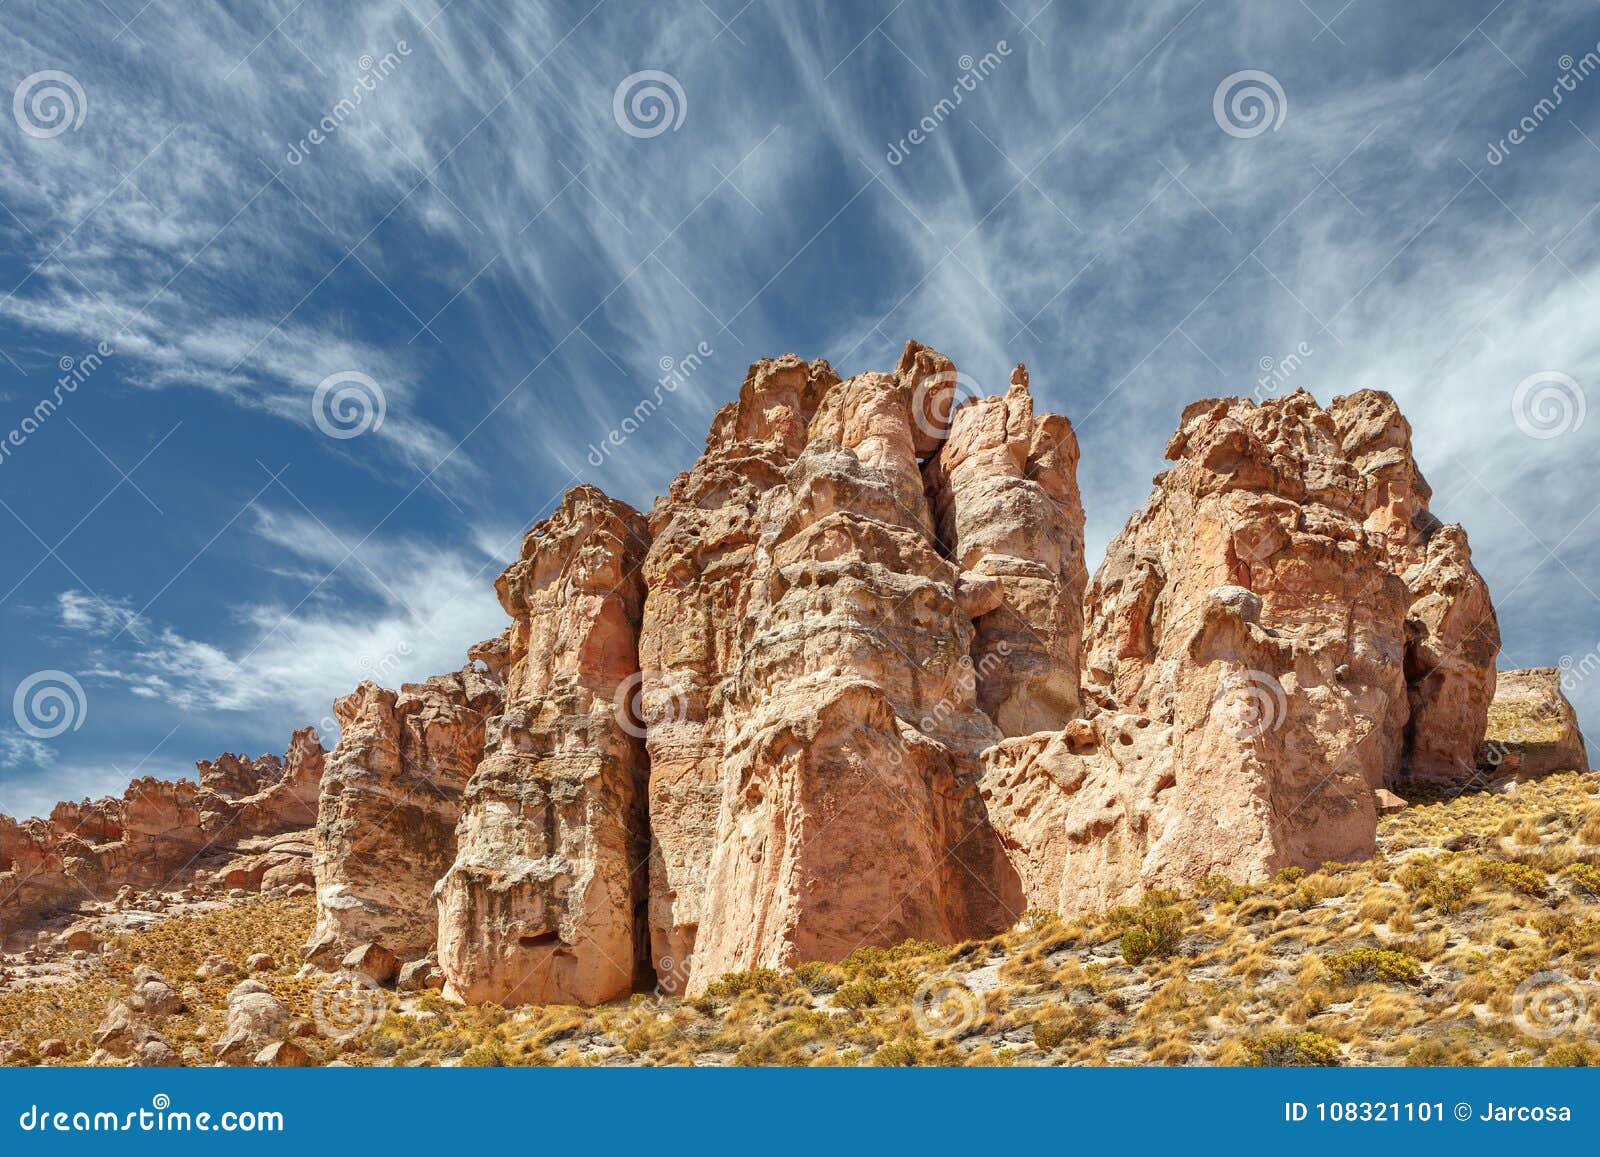 rocky red formation of valle de la felicidad near cariquima and